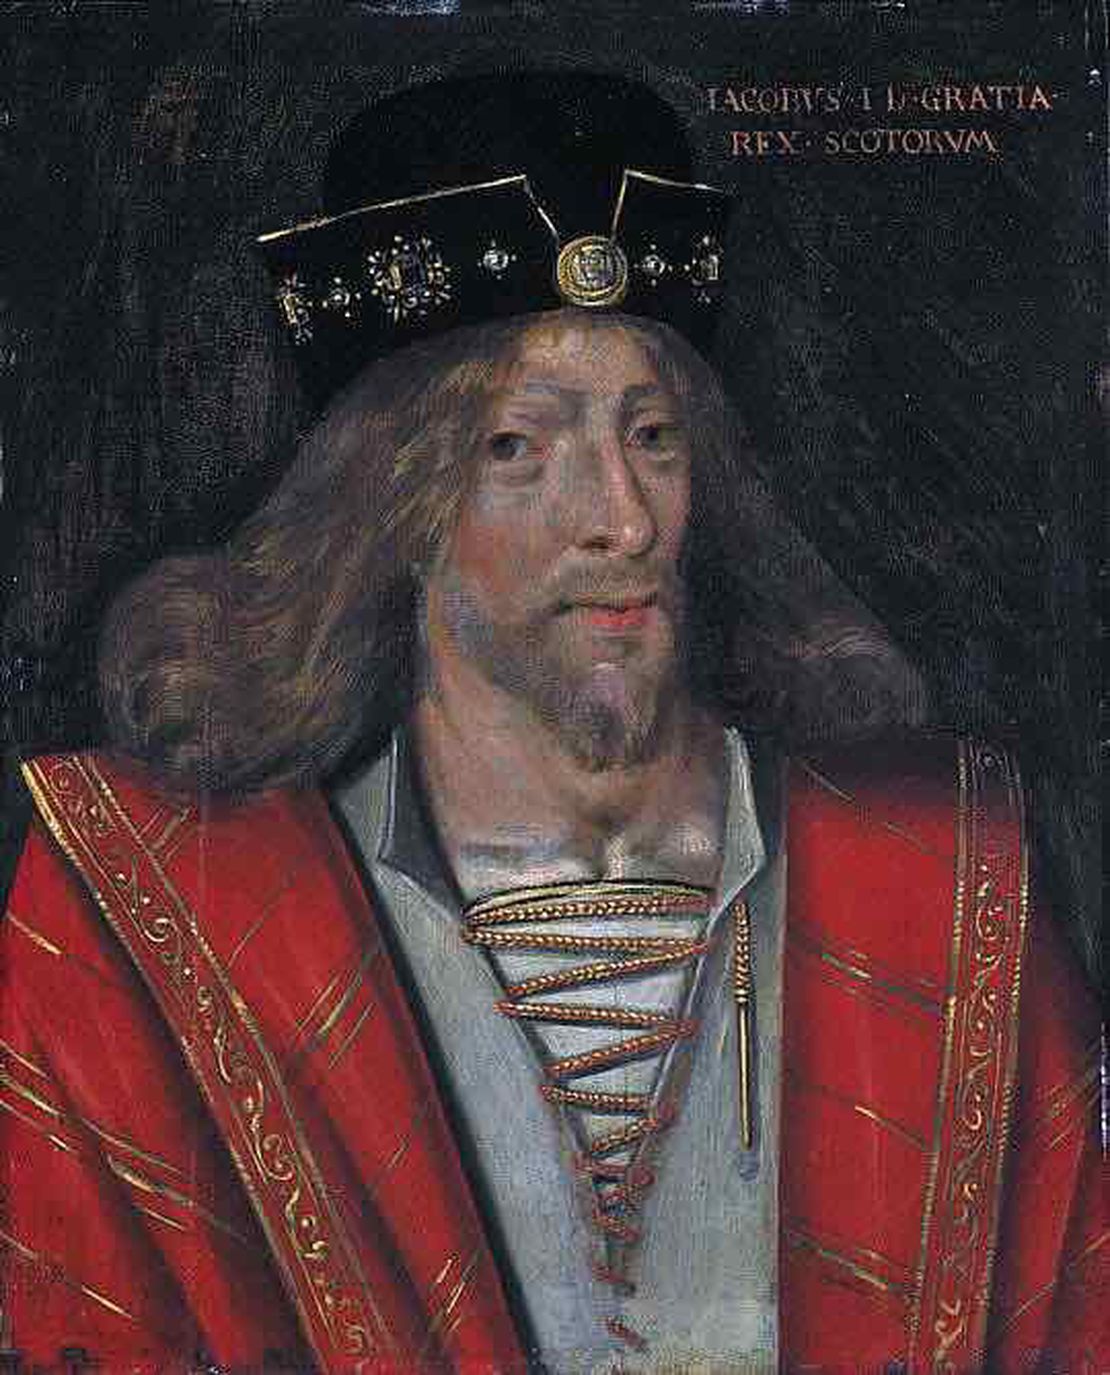 King James I, born